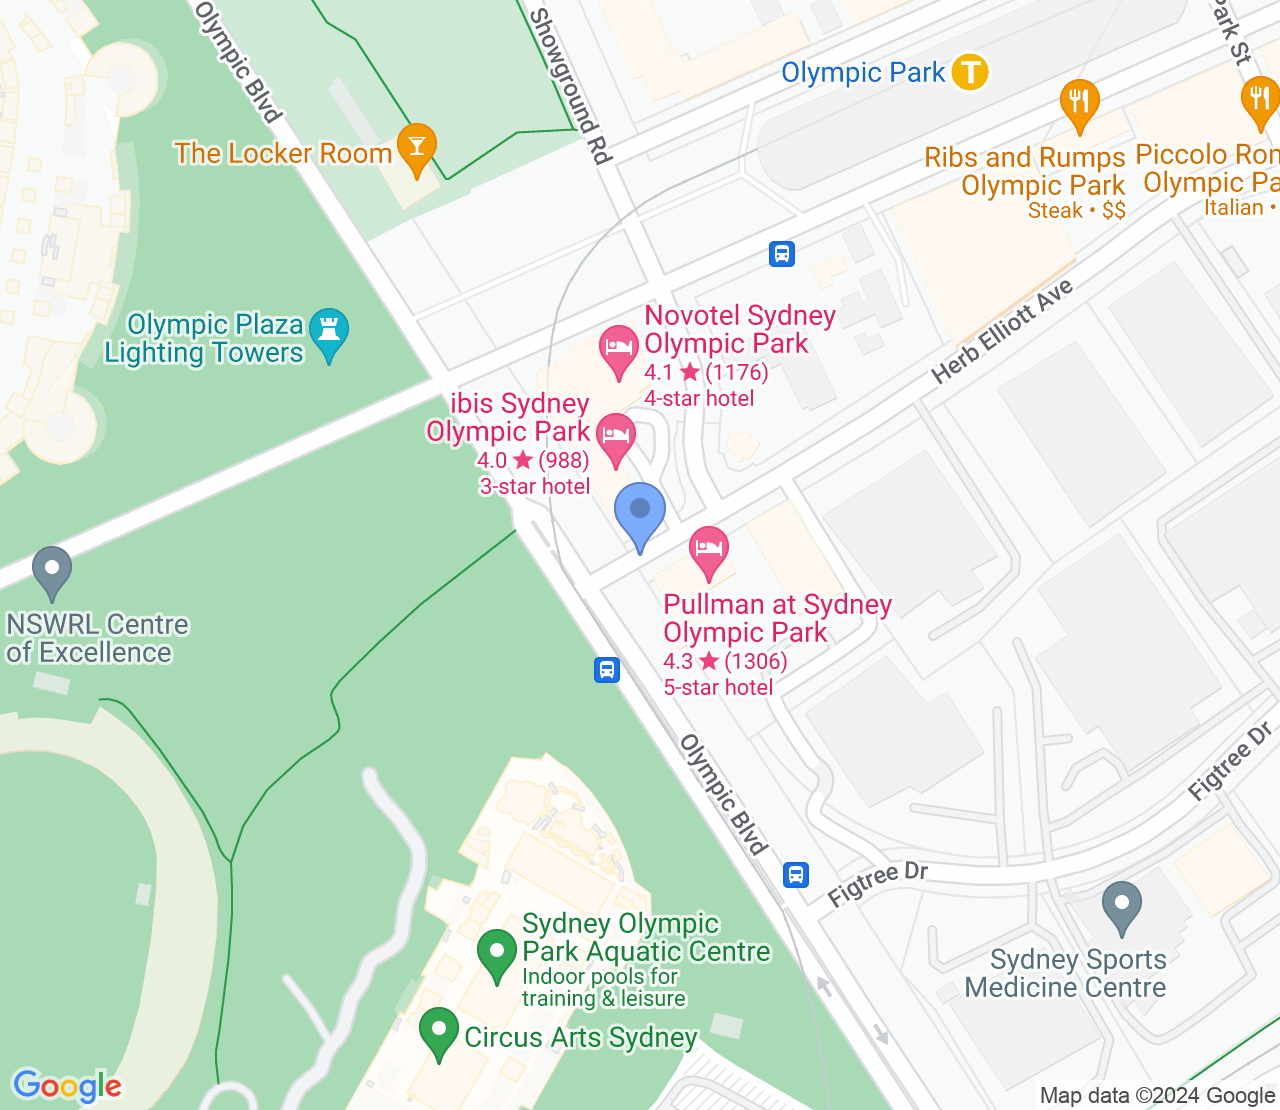 Google Maps image of Sydney Olympic Park